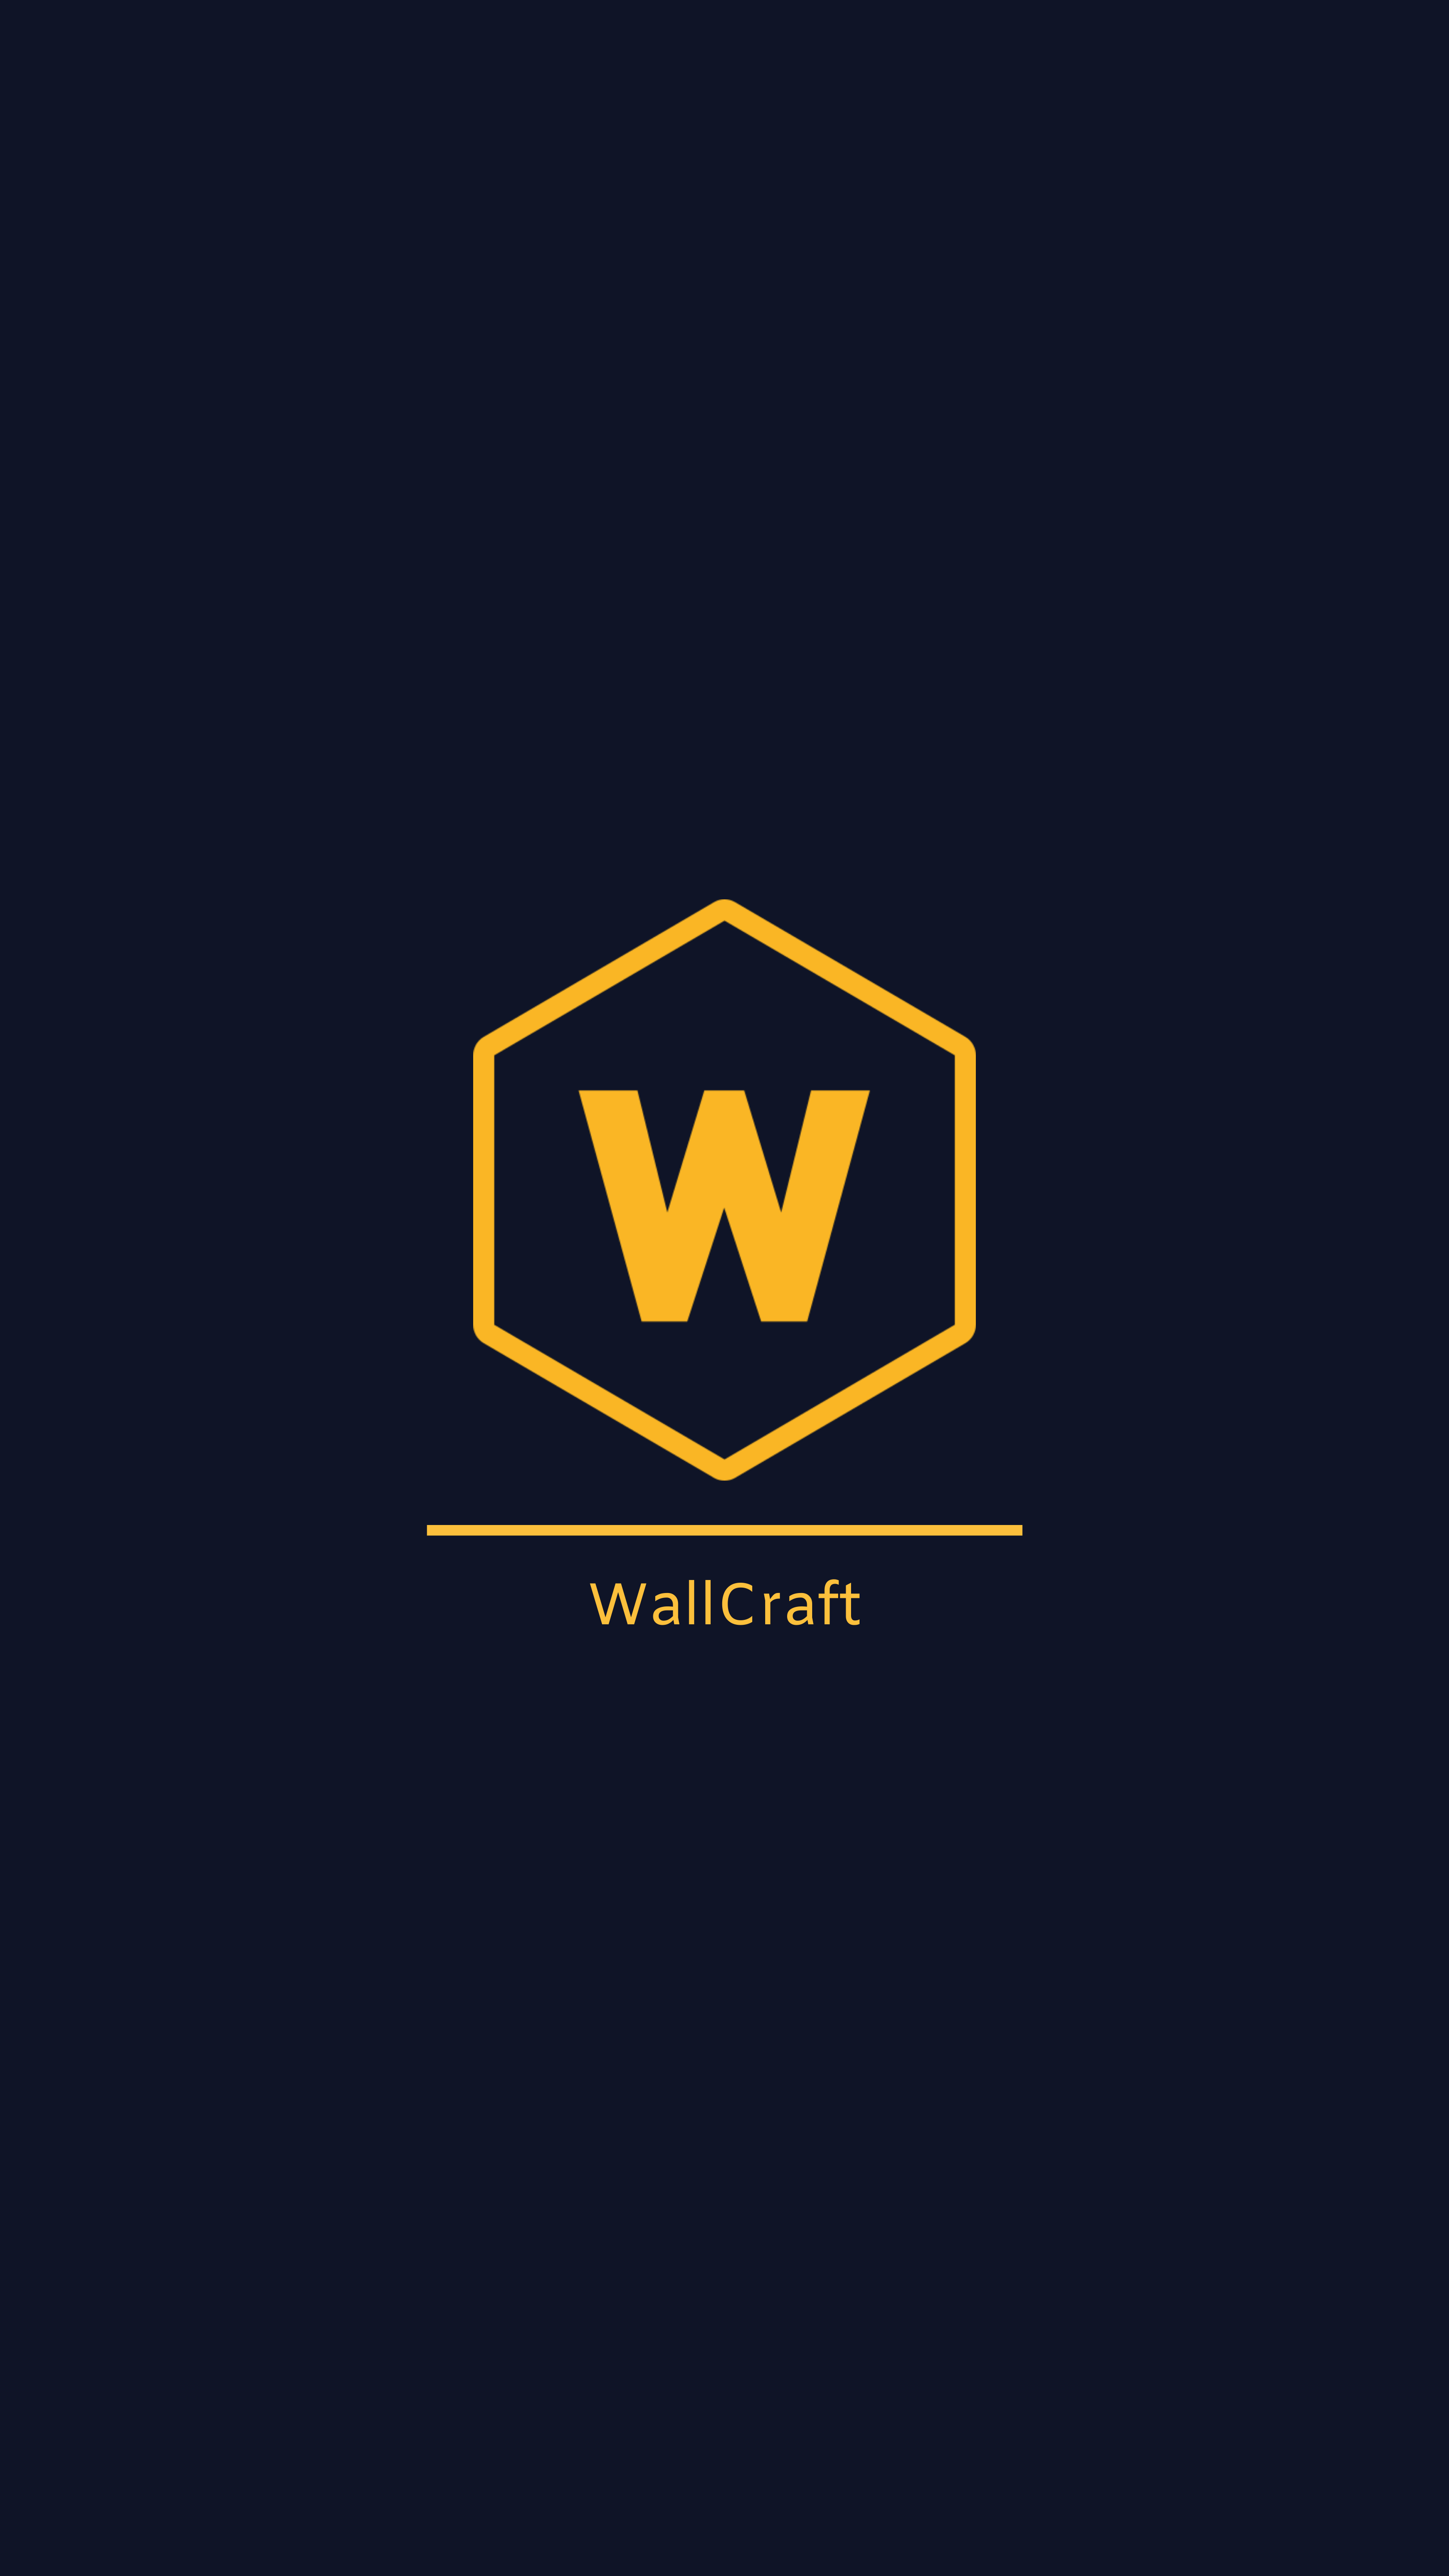 Популярные заставки и фоны Wallcraft на компьютер